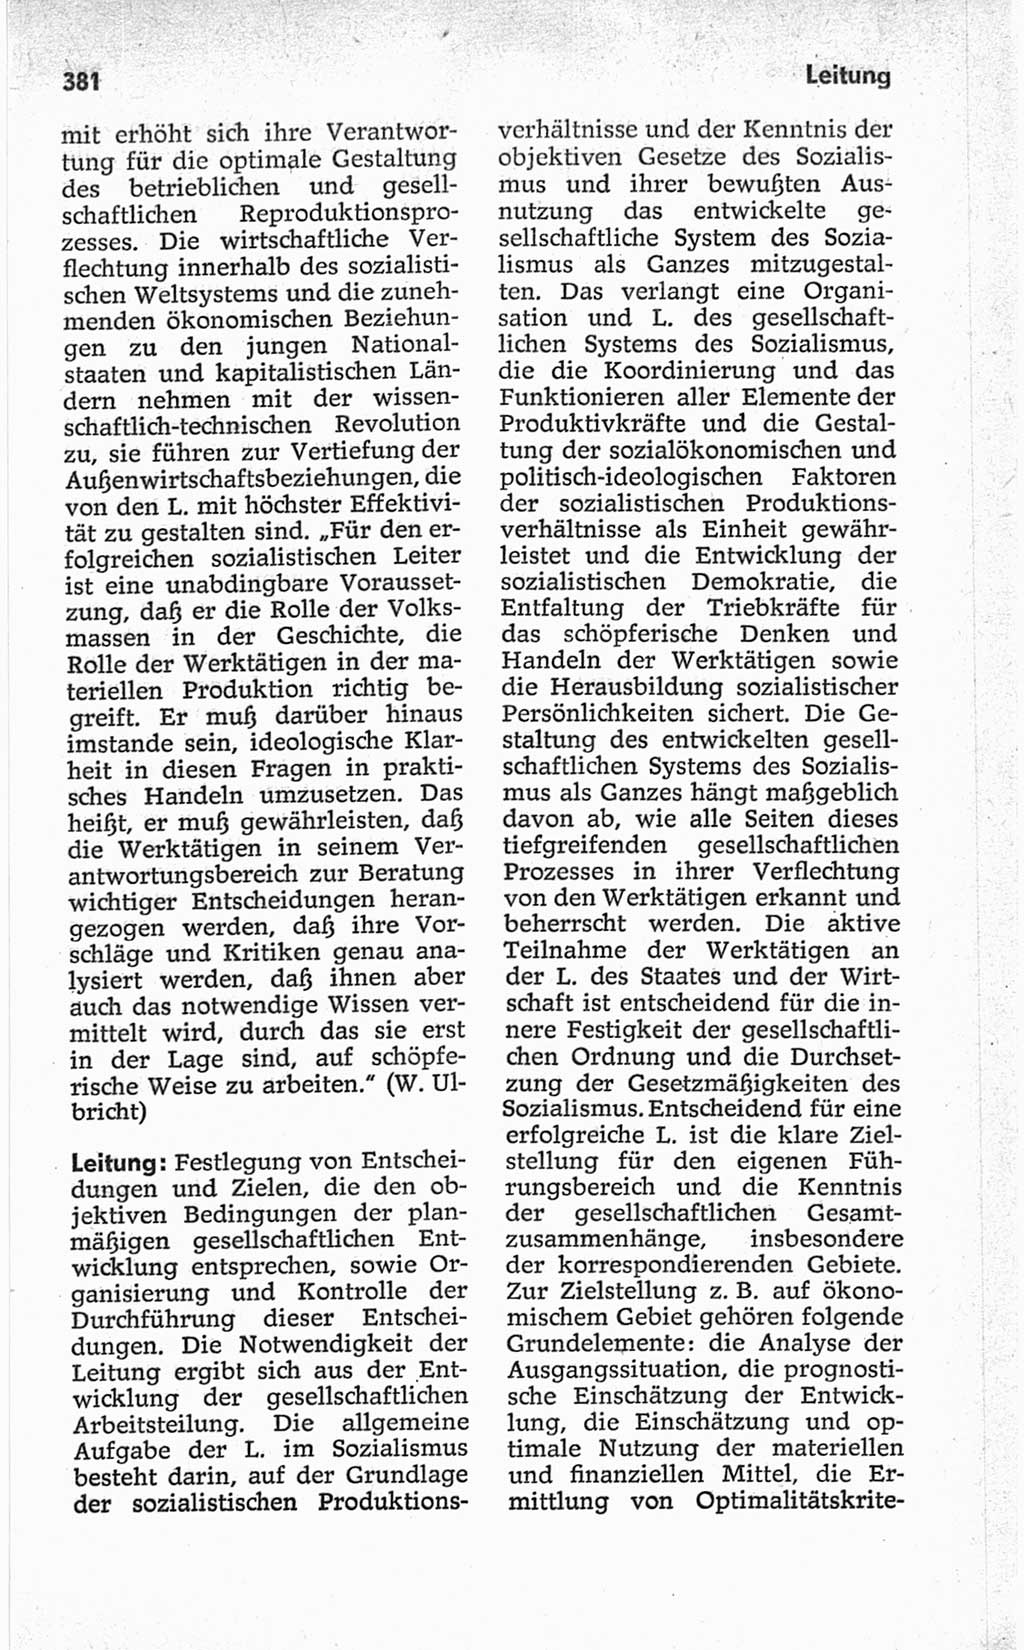 Kleines politisches Wörterbuch [Deutsche Demokratische Republik (DDR)] 1967, Seite 381 (Kl. pol. Wb. DDR 1967, S. 381)